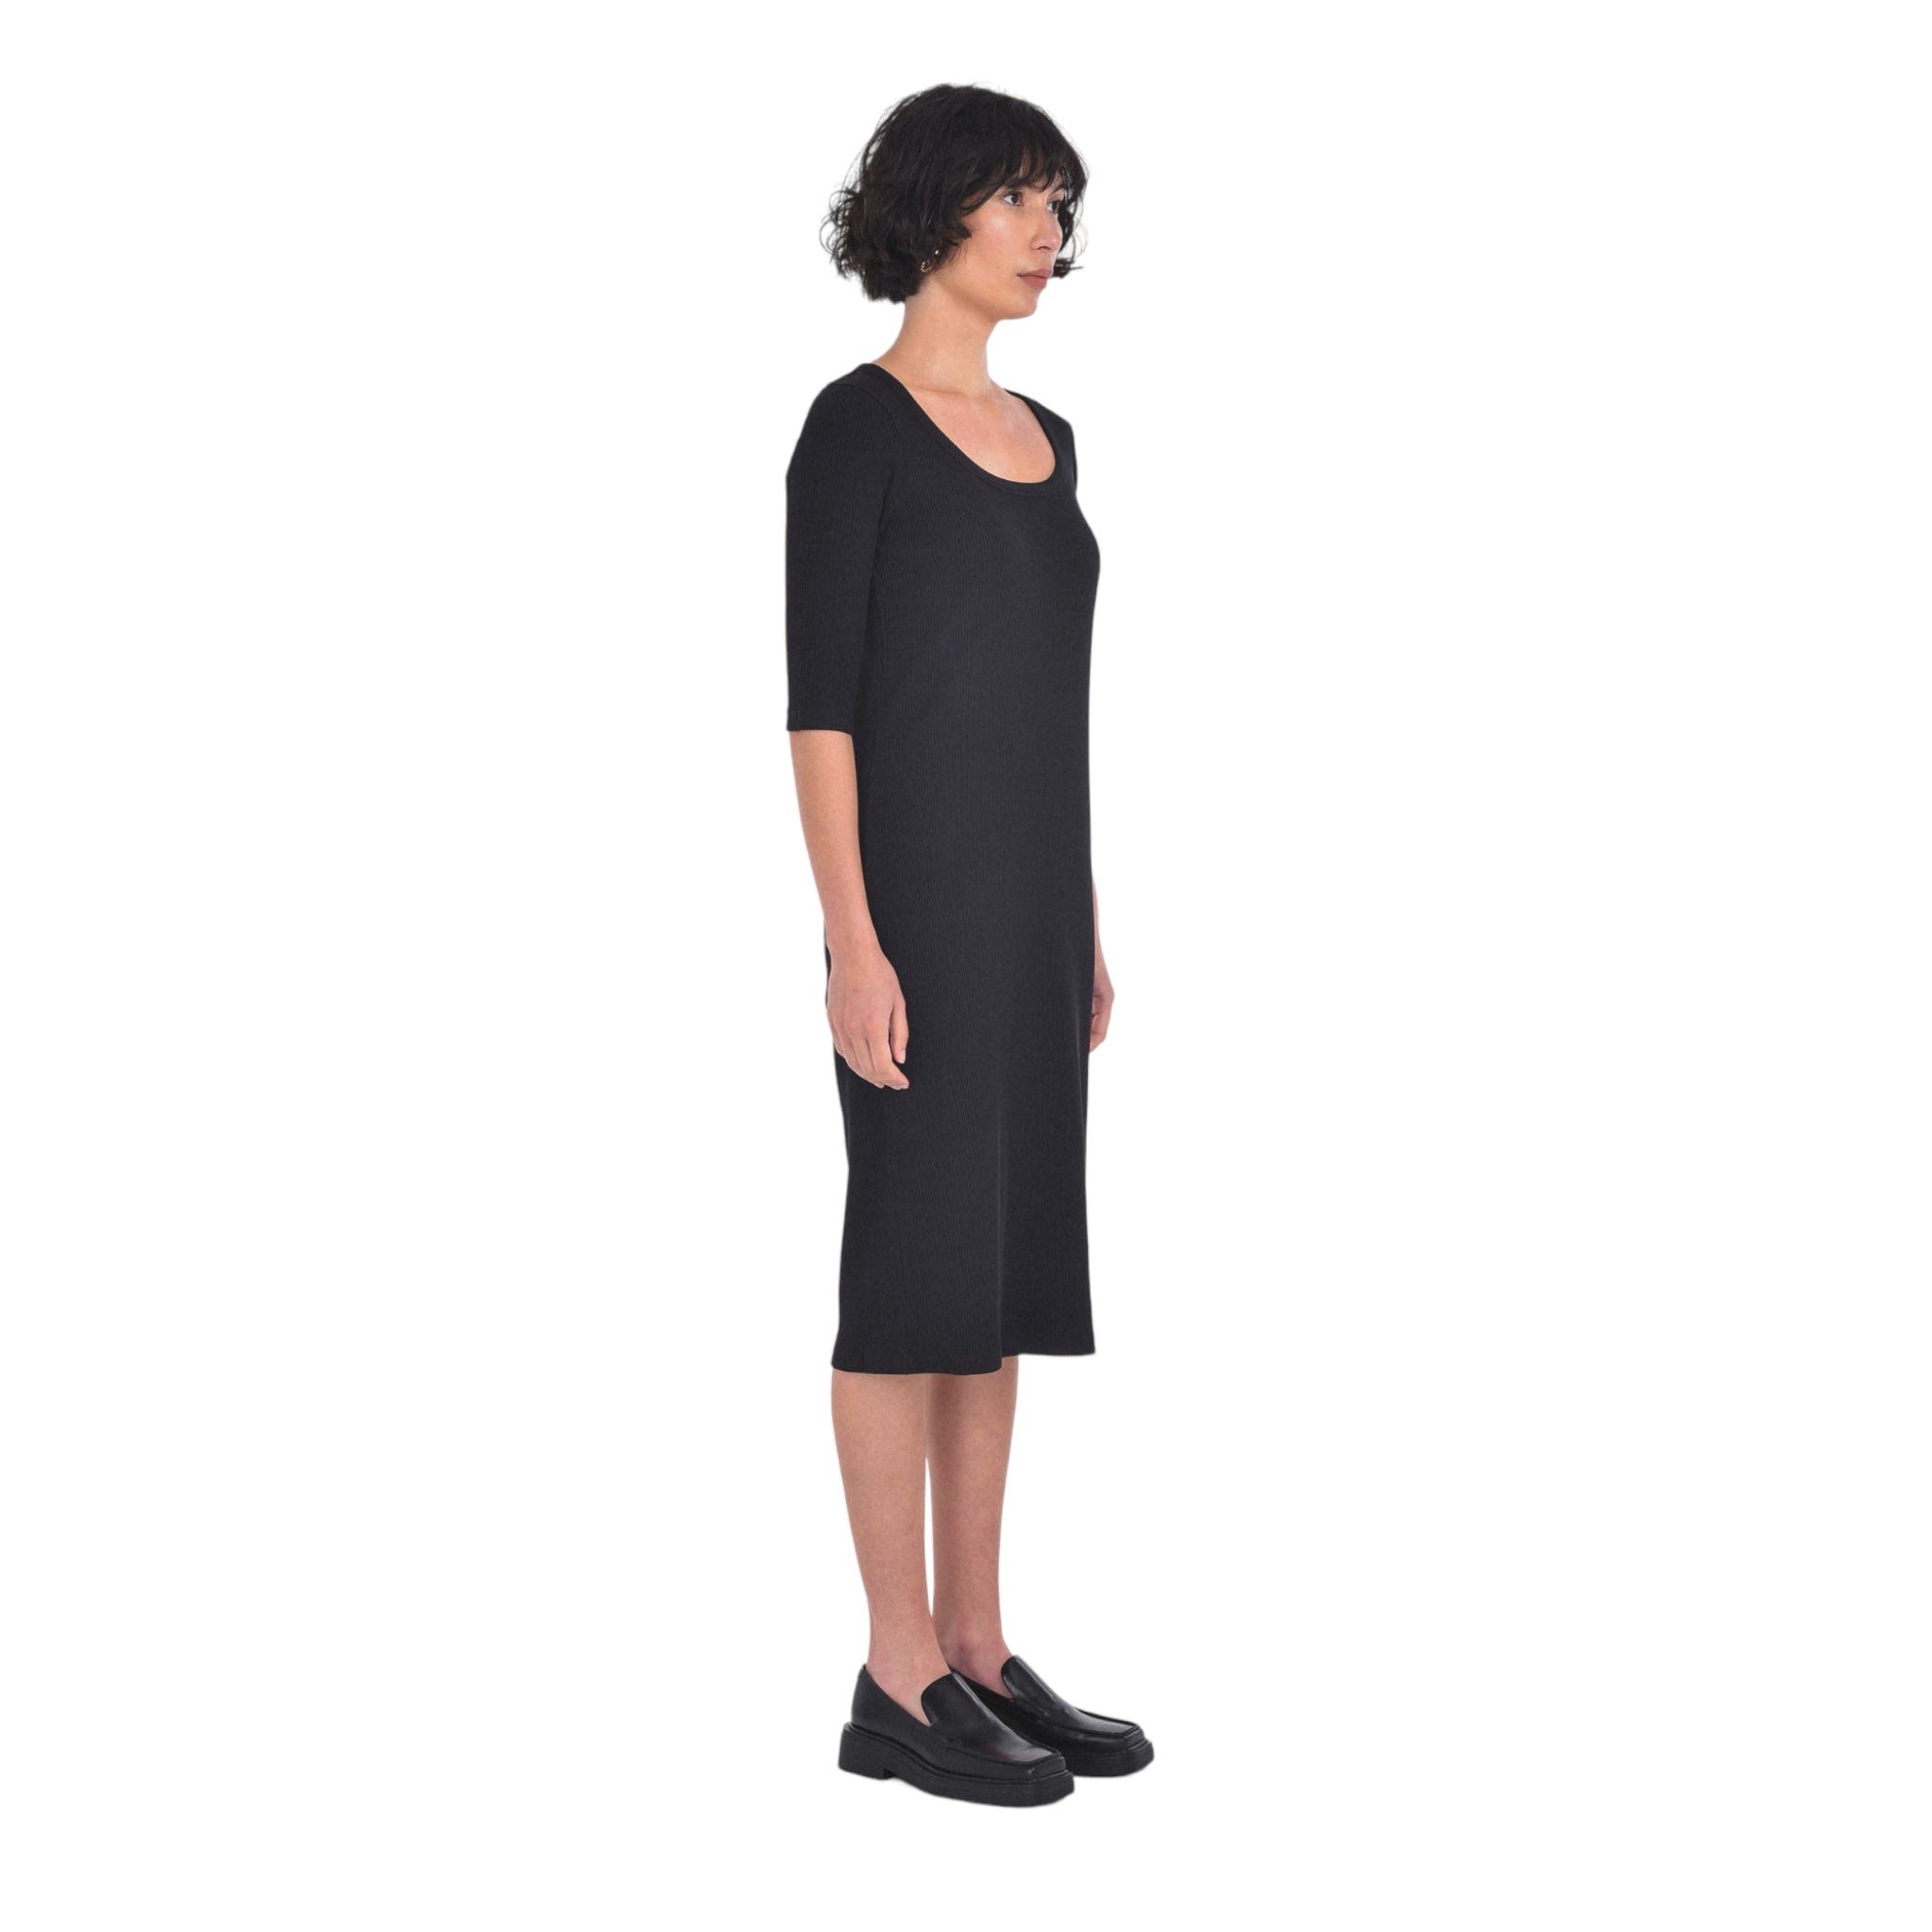 Veronica Dress in Black-Veri Peri